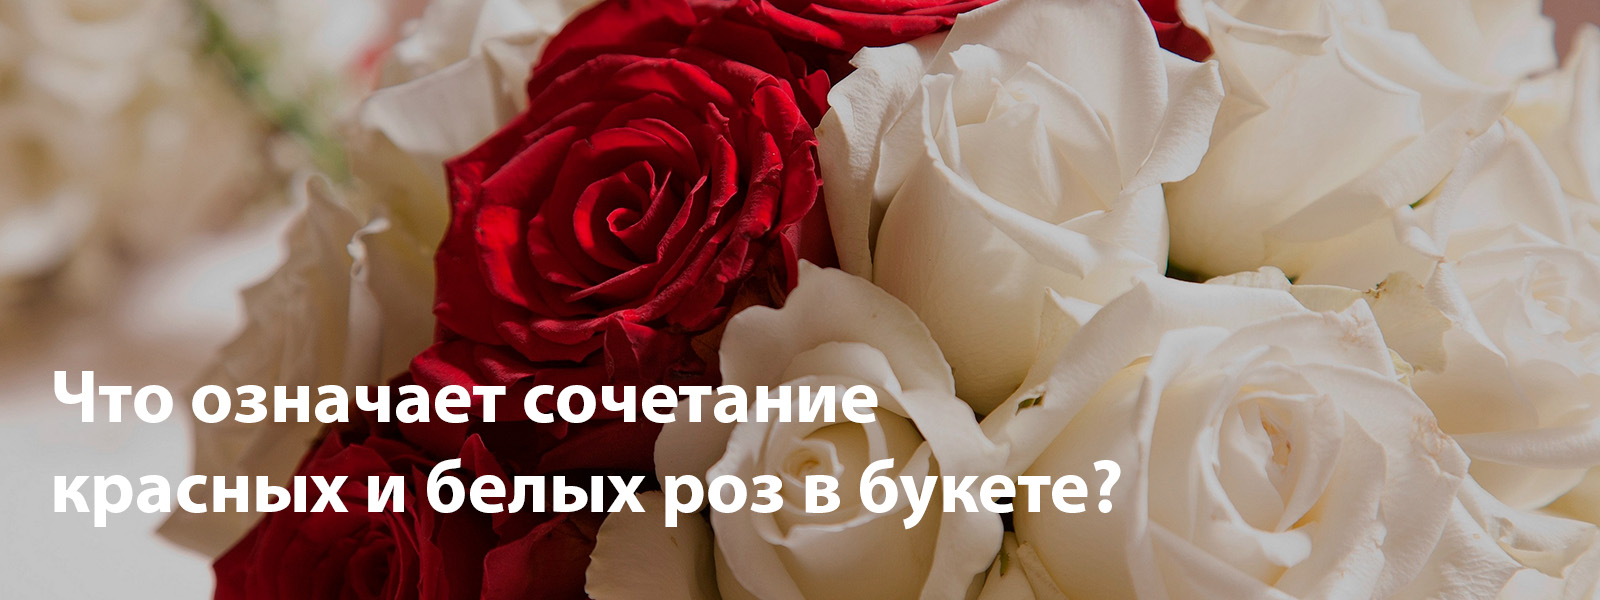 Cочетание красных и белых роз в букете